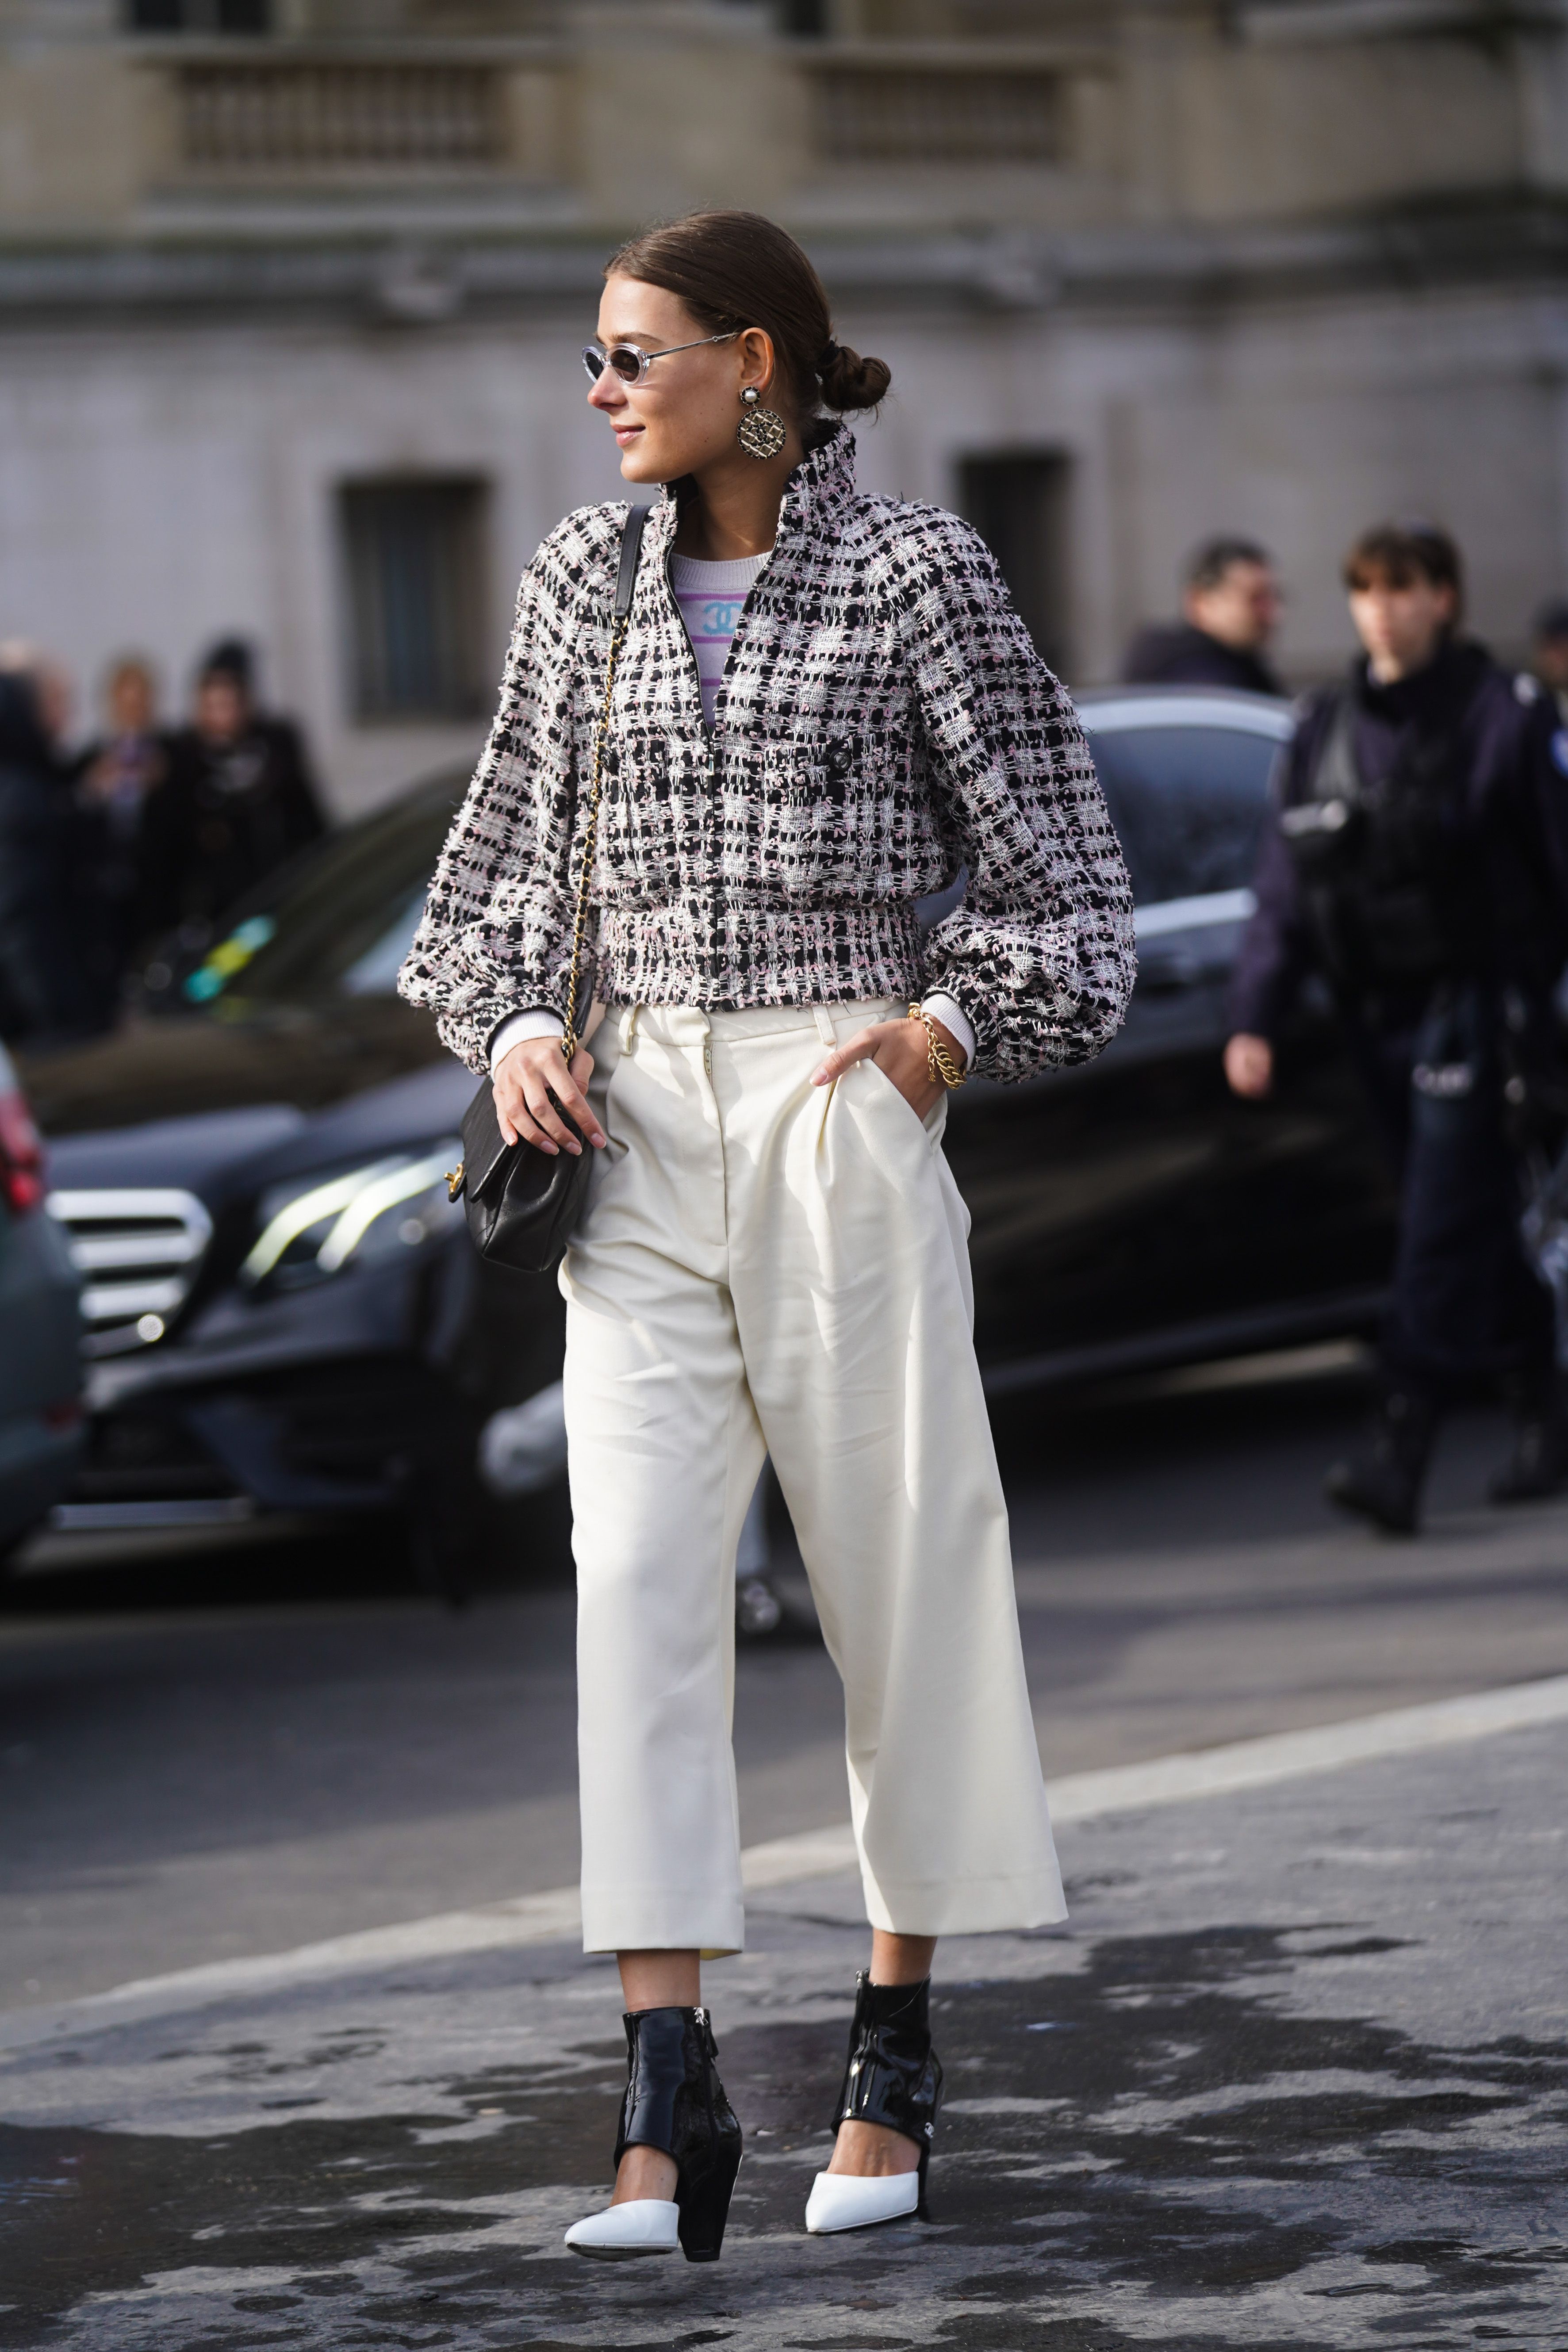 Pantalón blanco en invierno ? No hay duda . 📷 @fashion_jackson y